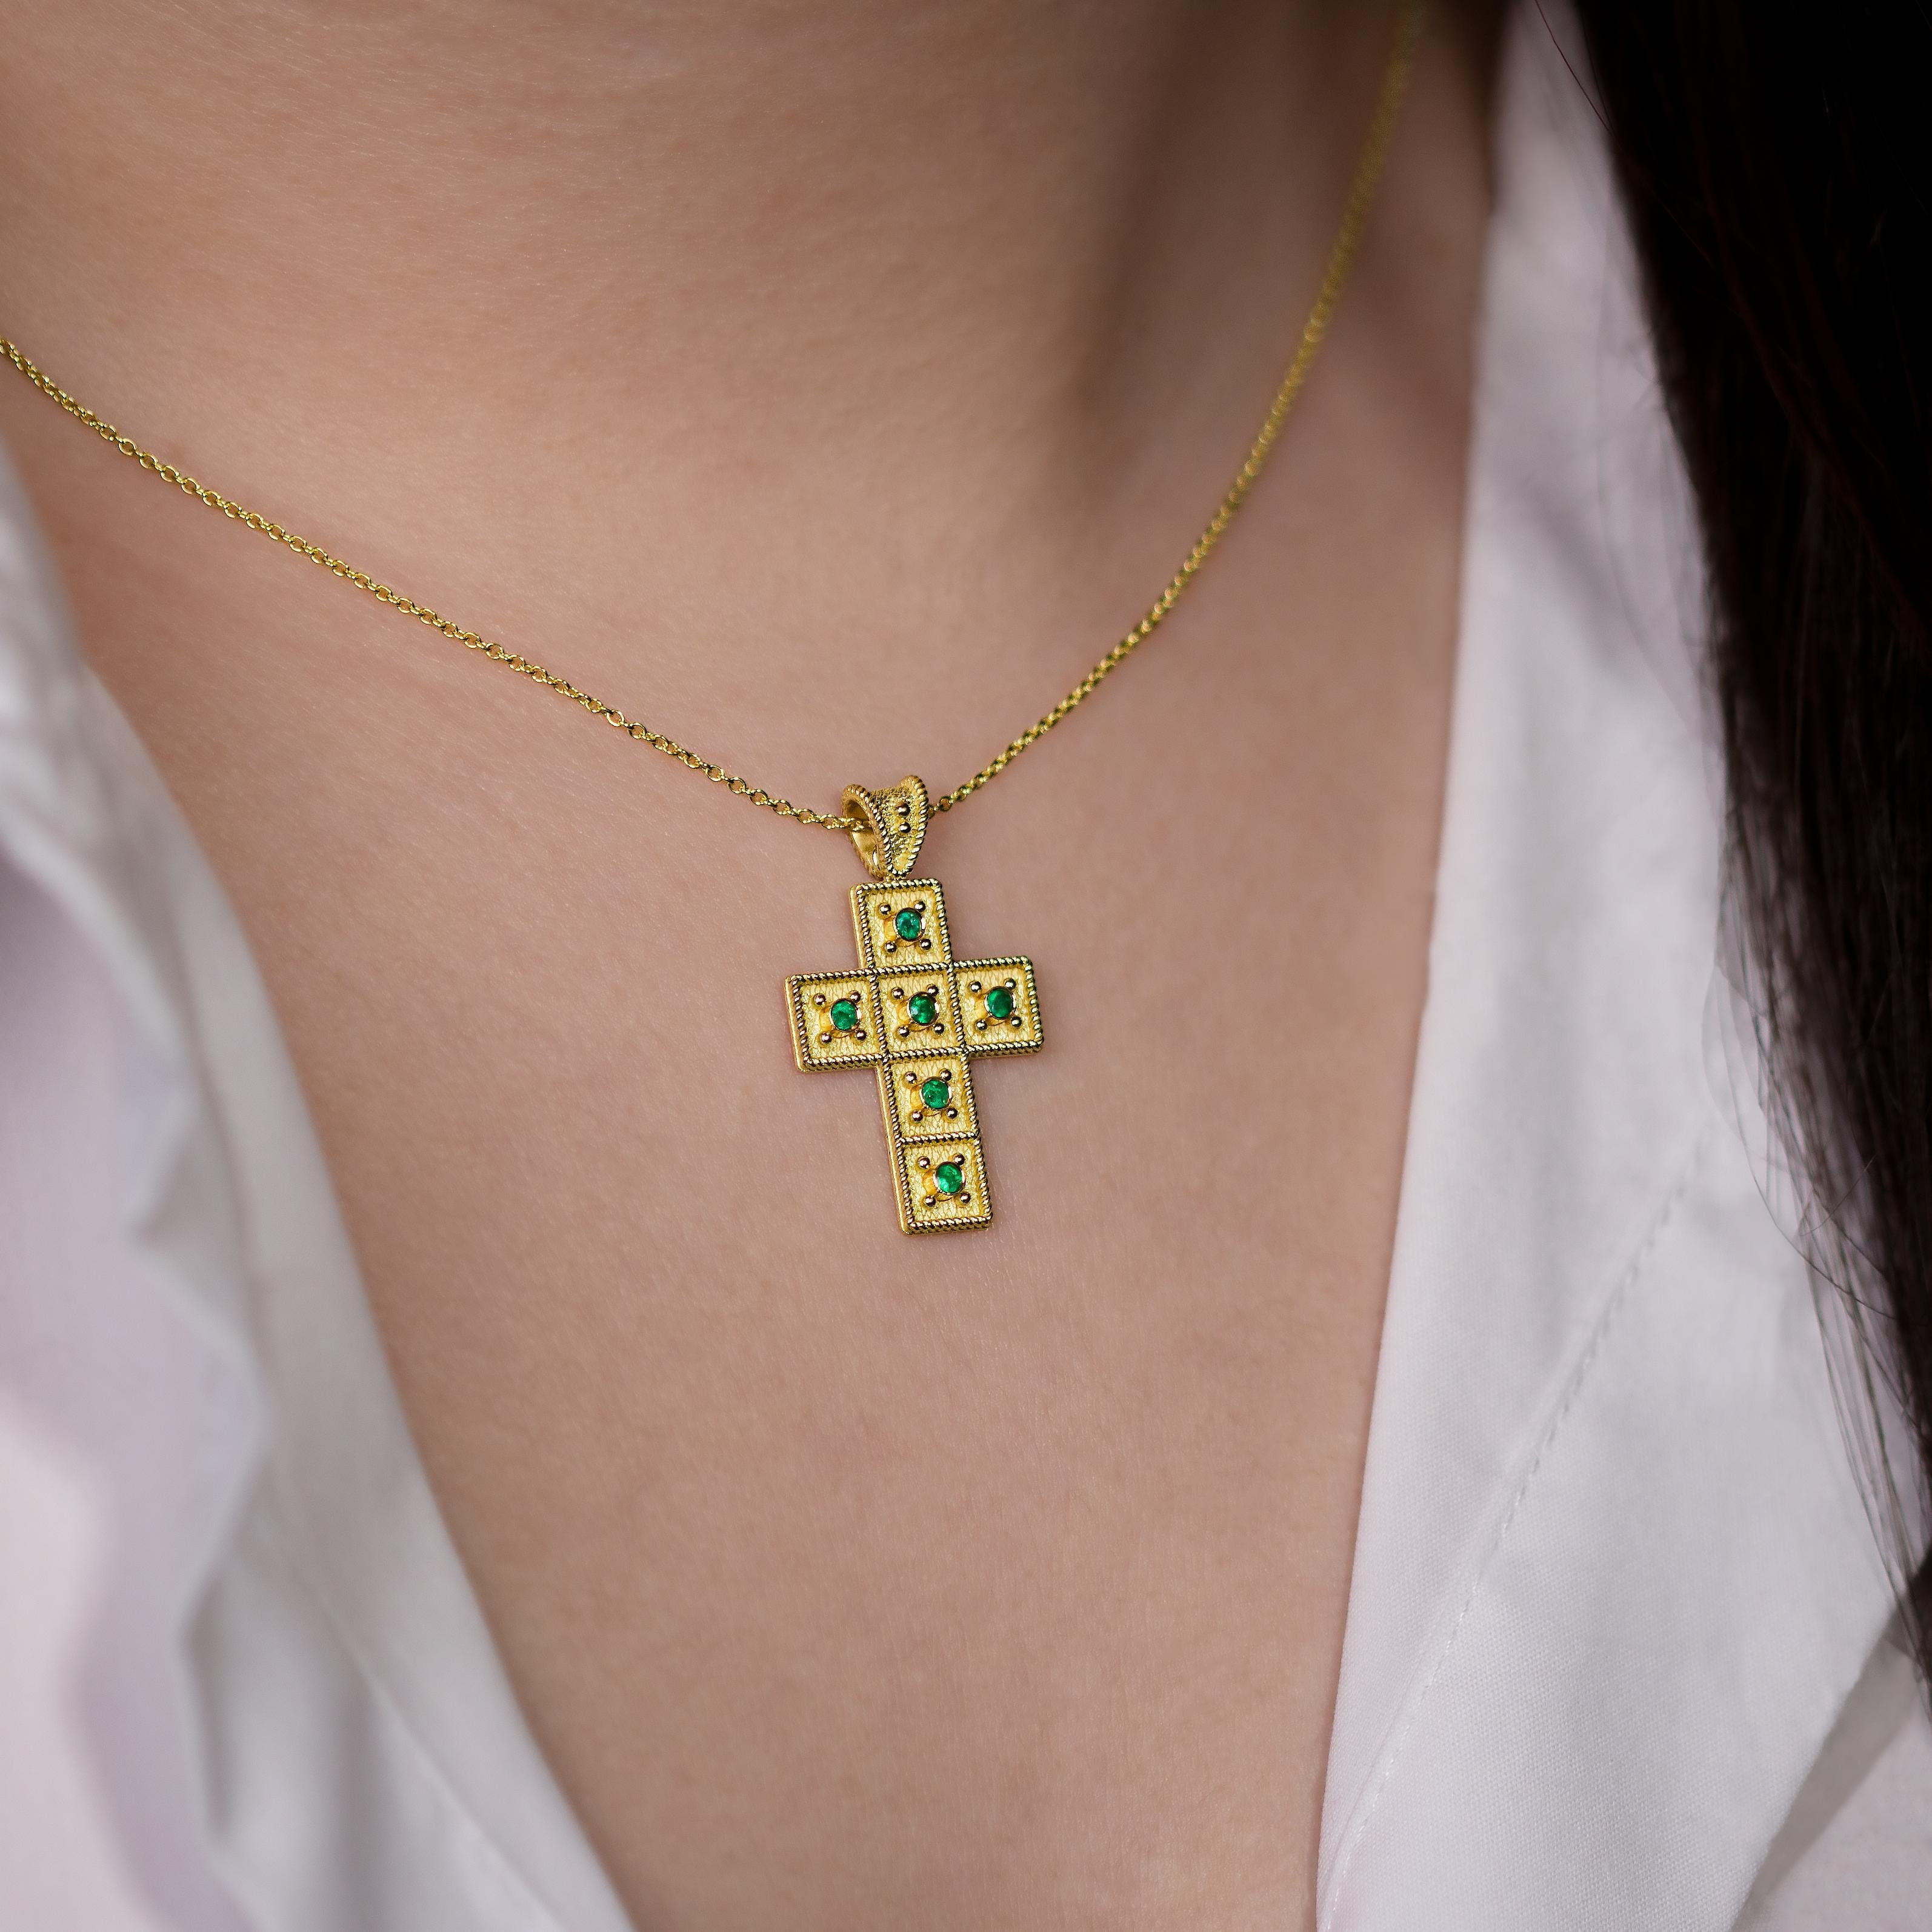 Dieser exquisite goldene Kreuzanhänger wird von einem filigranen goldenen Seil umrahmt und ist mit einer Konstellation funkelnder Smaragde geschmückt. Er ist ein Symbol für zeitlosen Glauben und opulenten Charme, der das Herz verzaubert.

100%